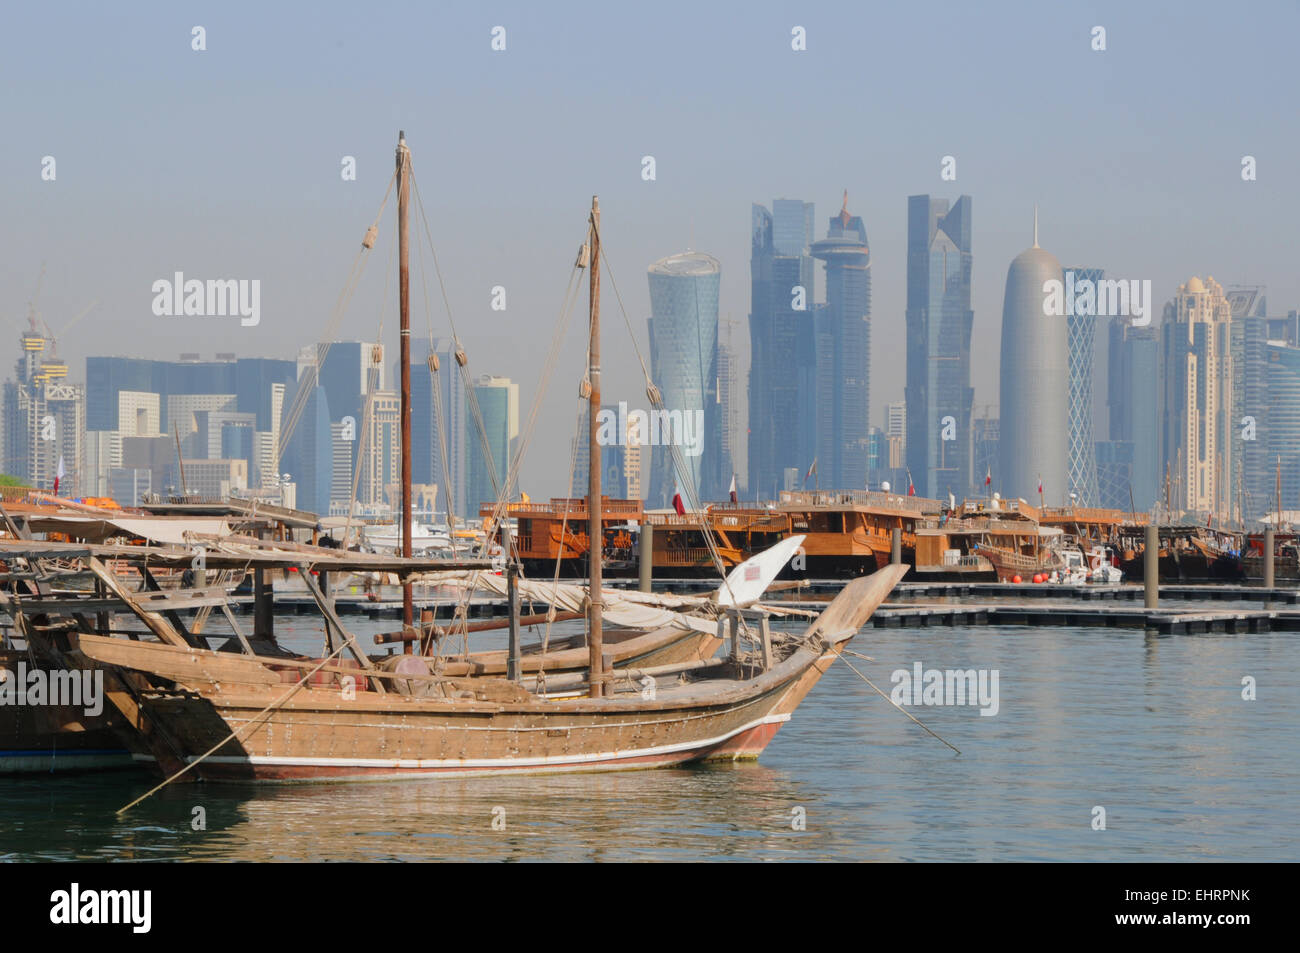 La Corniche et le port de boutres, Doha, Qatar. Moyen Orient. Banque D'Images